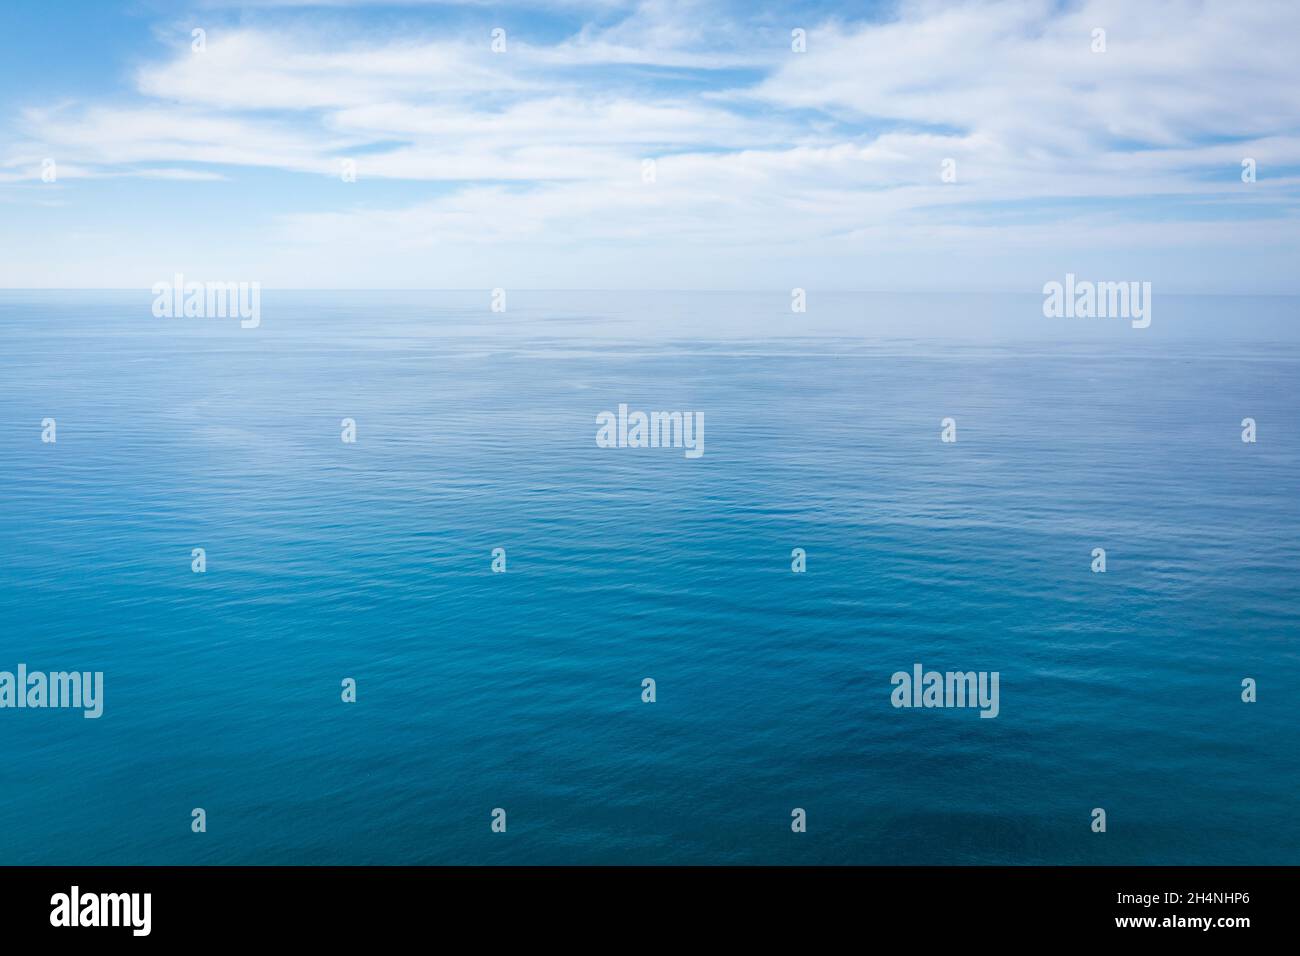 Primer plano superficie de aguas tranquilas de mar azul oceánico con luz diurna y nubes. Textura de fondo abstracto. Fotografías de alta calidad Foto de stock